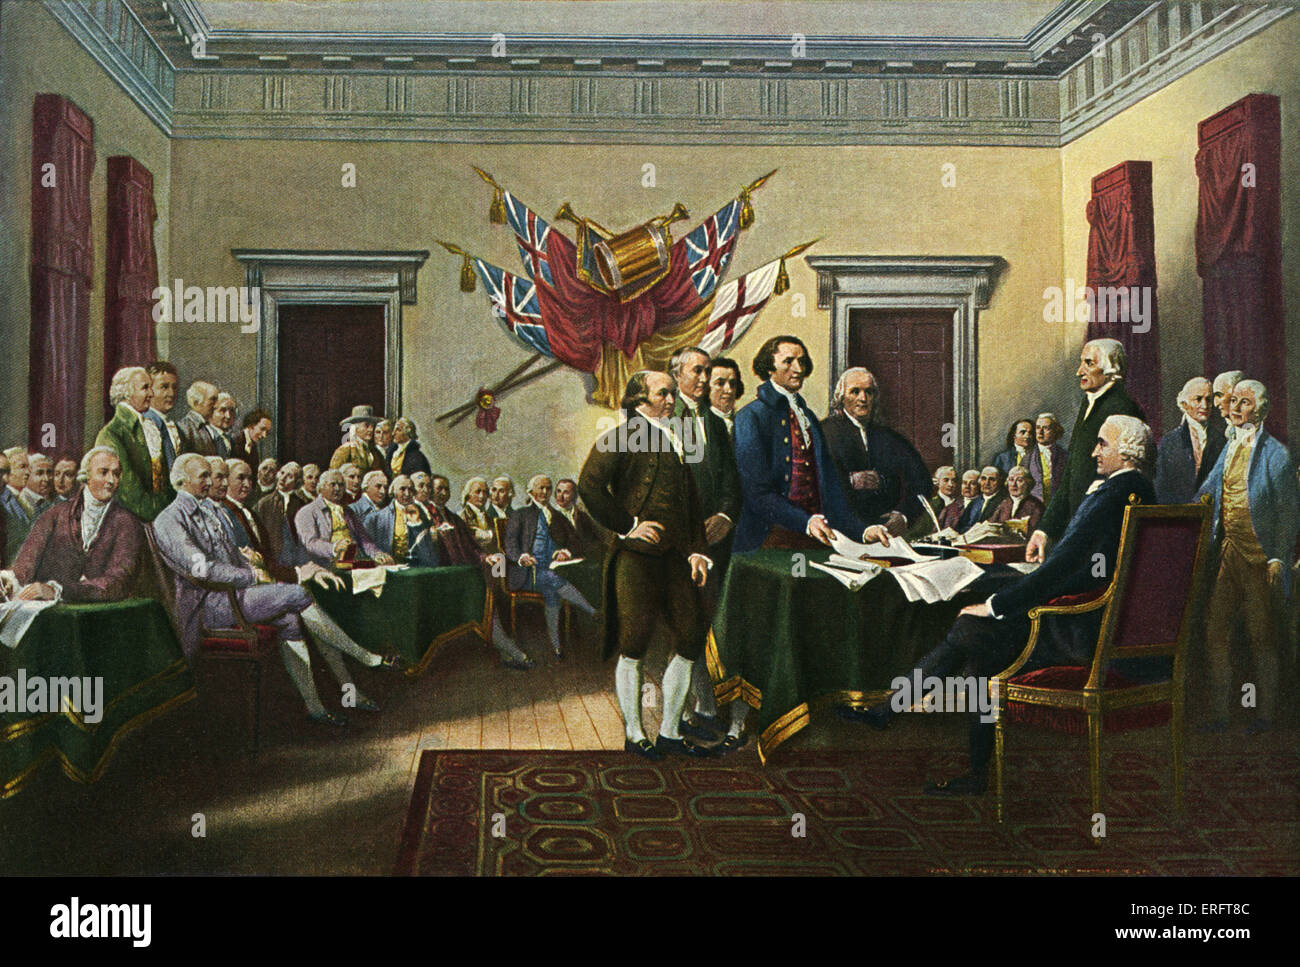 La 'Signing (américain) Déclaration d'indépendance, le 28 juin 1776' - D'après une peinture de John Trumbull, commandé en 1817. Huile sur toile, 12 pouces x 18 pouces. Thomas Jefferson et le comité de rédaction Présentation de document à John Hancock. TJ, principal auteur de la Déclaration d'Indépendance américaine et, plus tard, le président des Etats-Unis : 13 avril 1743 - 4 juillet 1826. JH, patriote de la Révolution américaine : 23 janvier 1737 - 8 octobre 1793. JT, artiste américaine : 6 juin 1756 - 10 novembre 1843. Banque D'Images